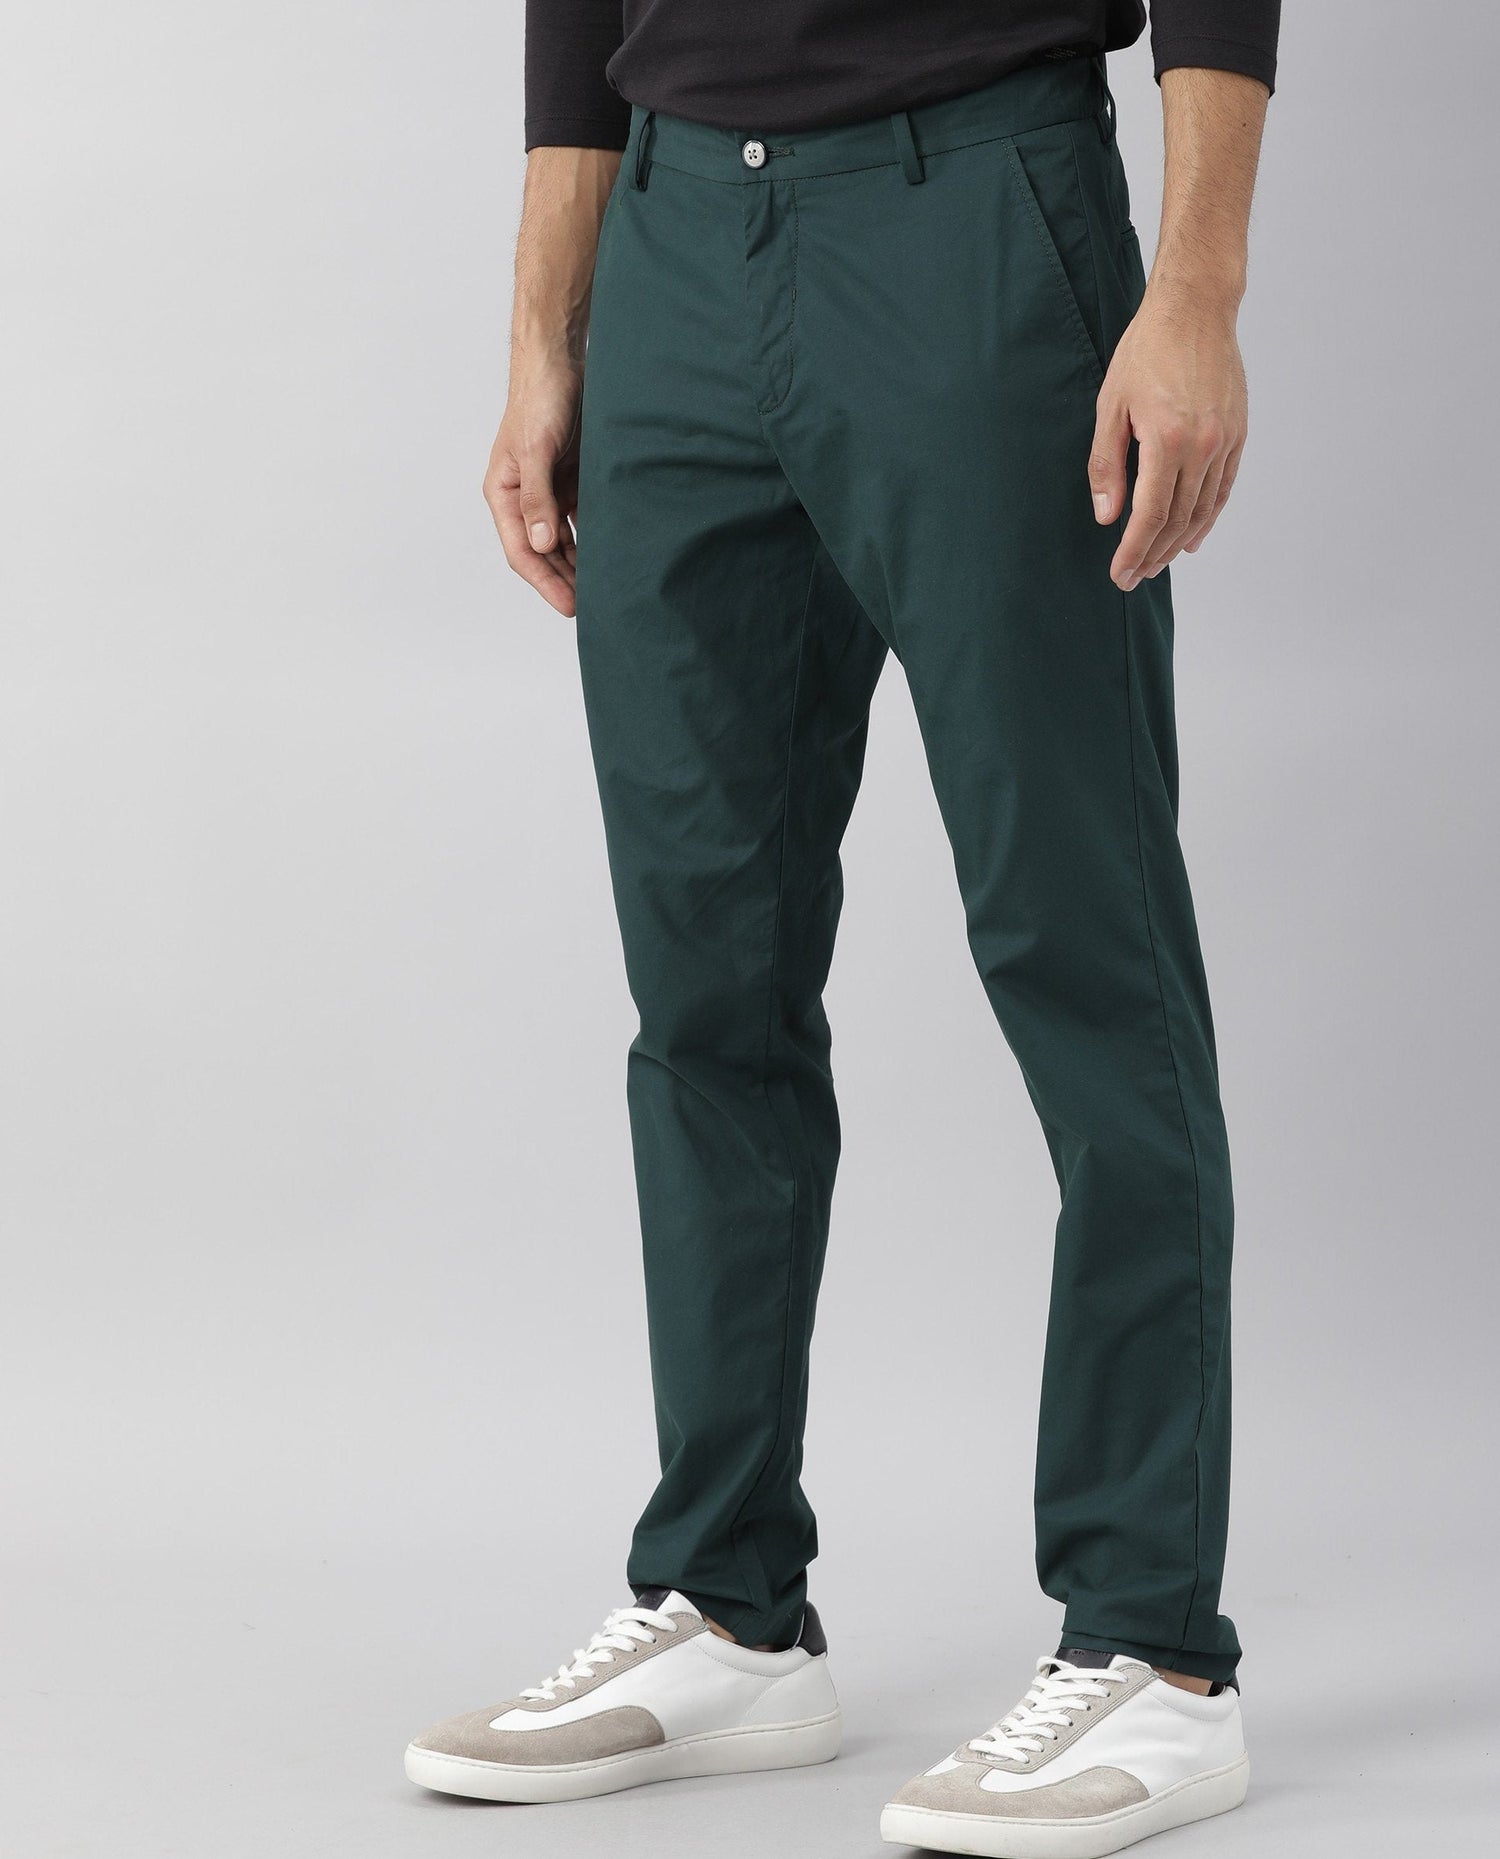 Rare Rabbit Men's Bake Green Solid Mid-Rise Regular Fit Trouser